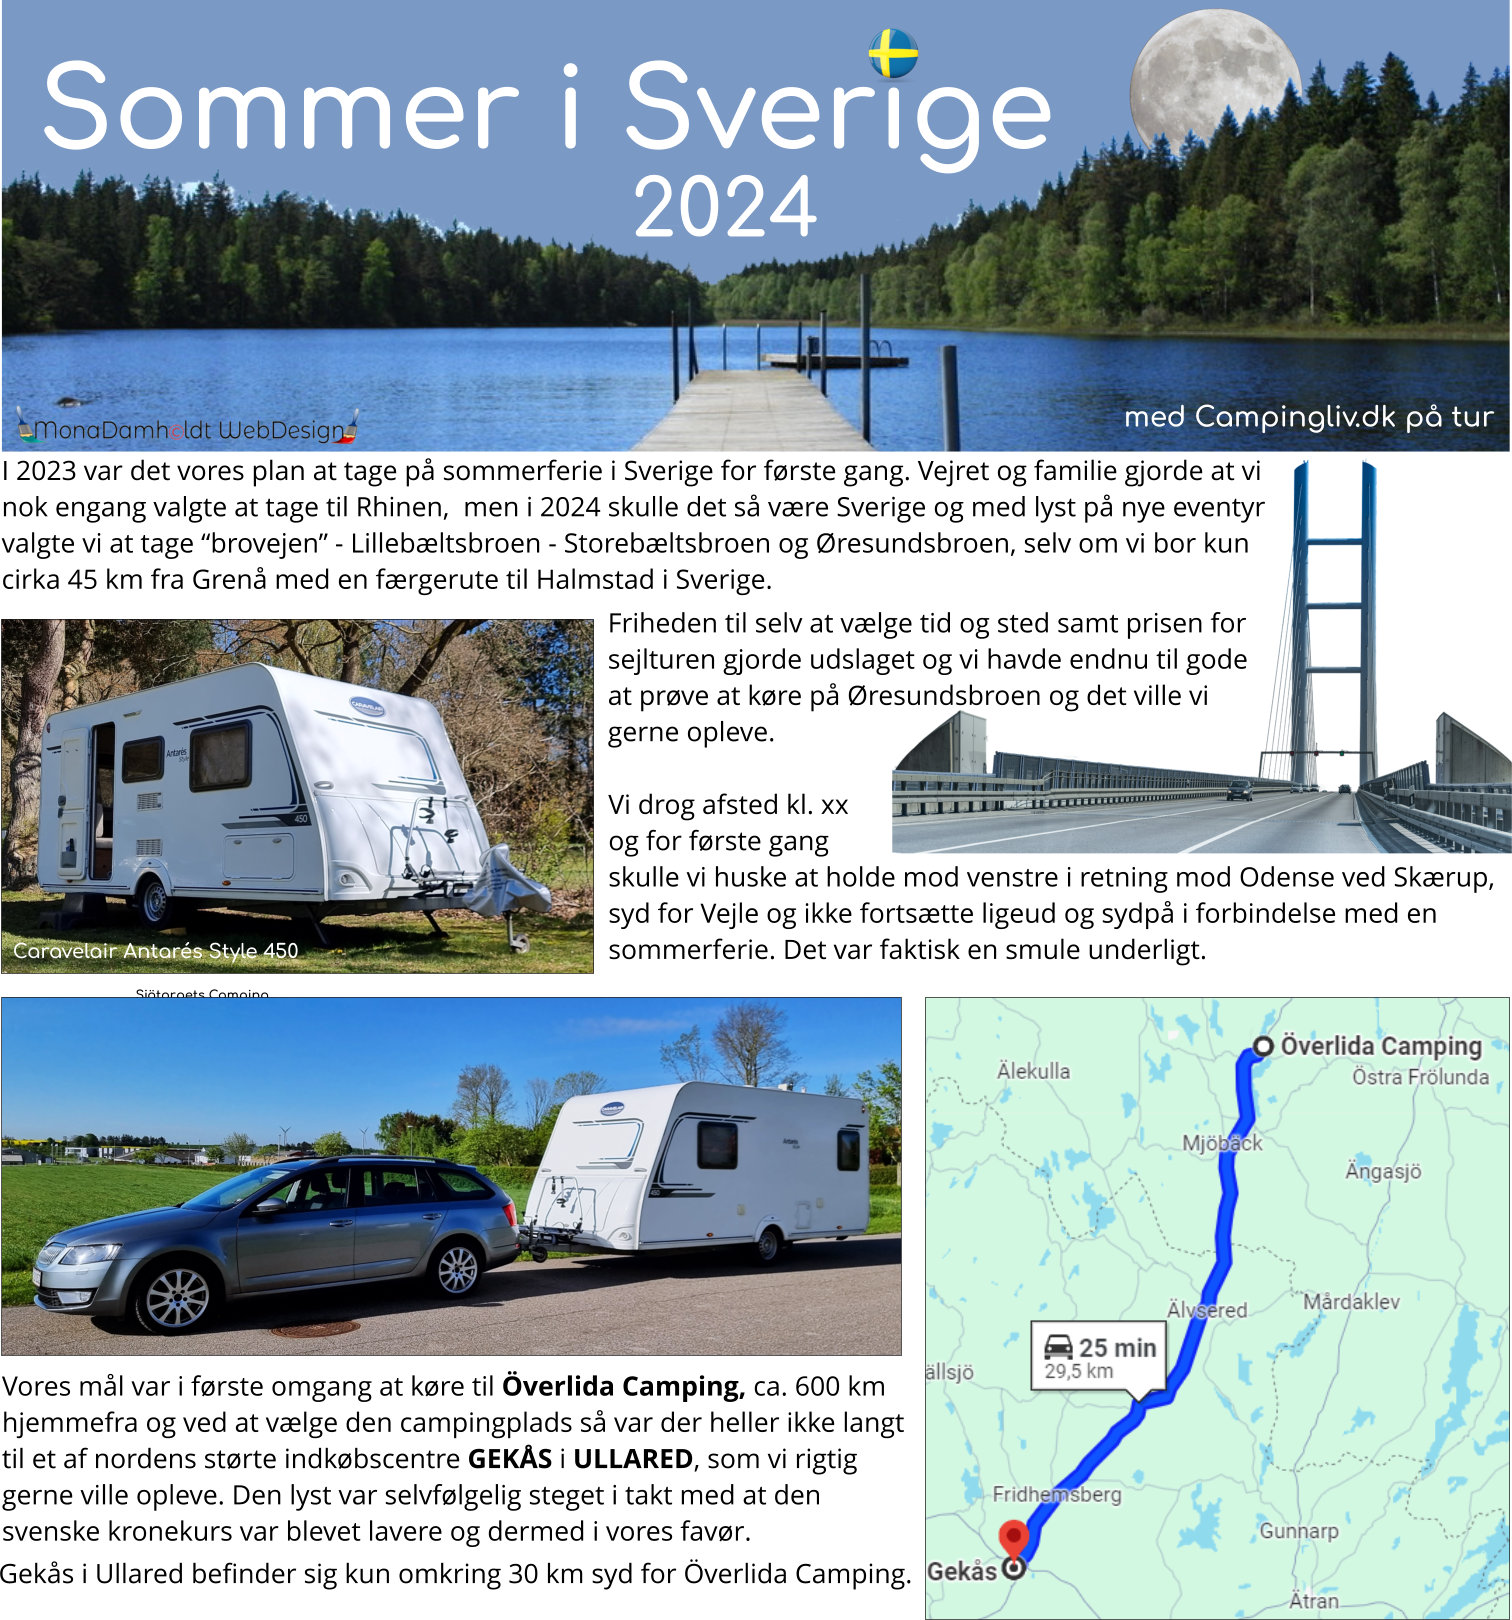 Camping i Sverige